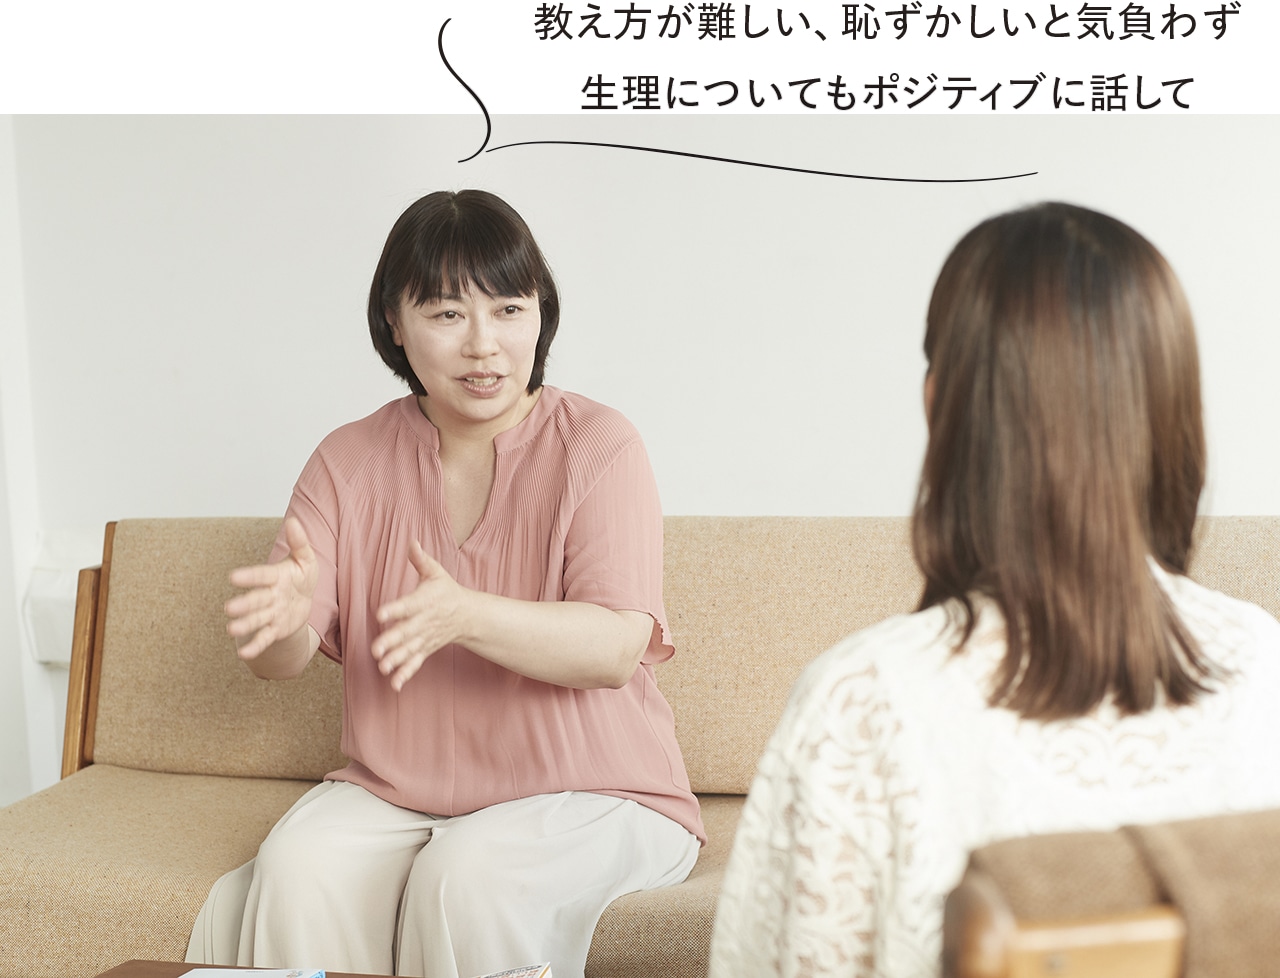 優木まおみさん　高橋幸子先生　教え方が難しい、恥ずかしいと気負わず生理についてもポジティブに話して